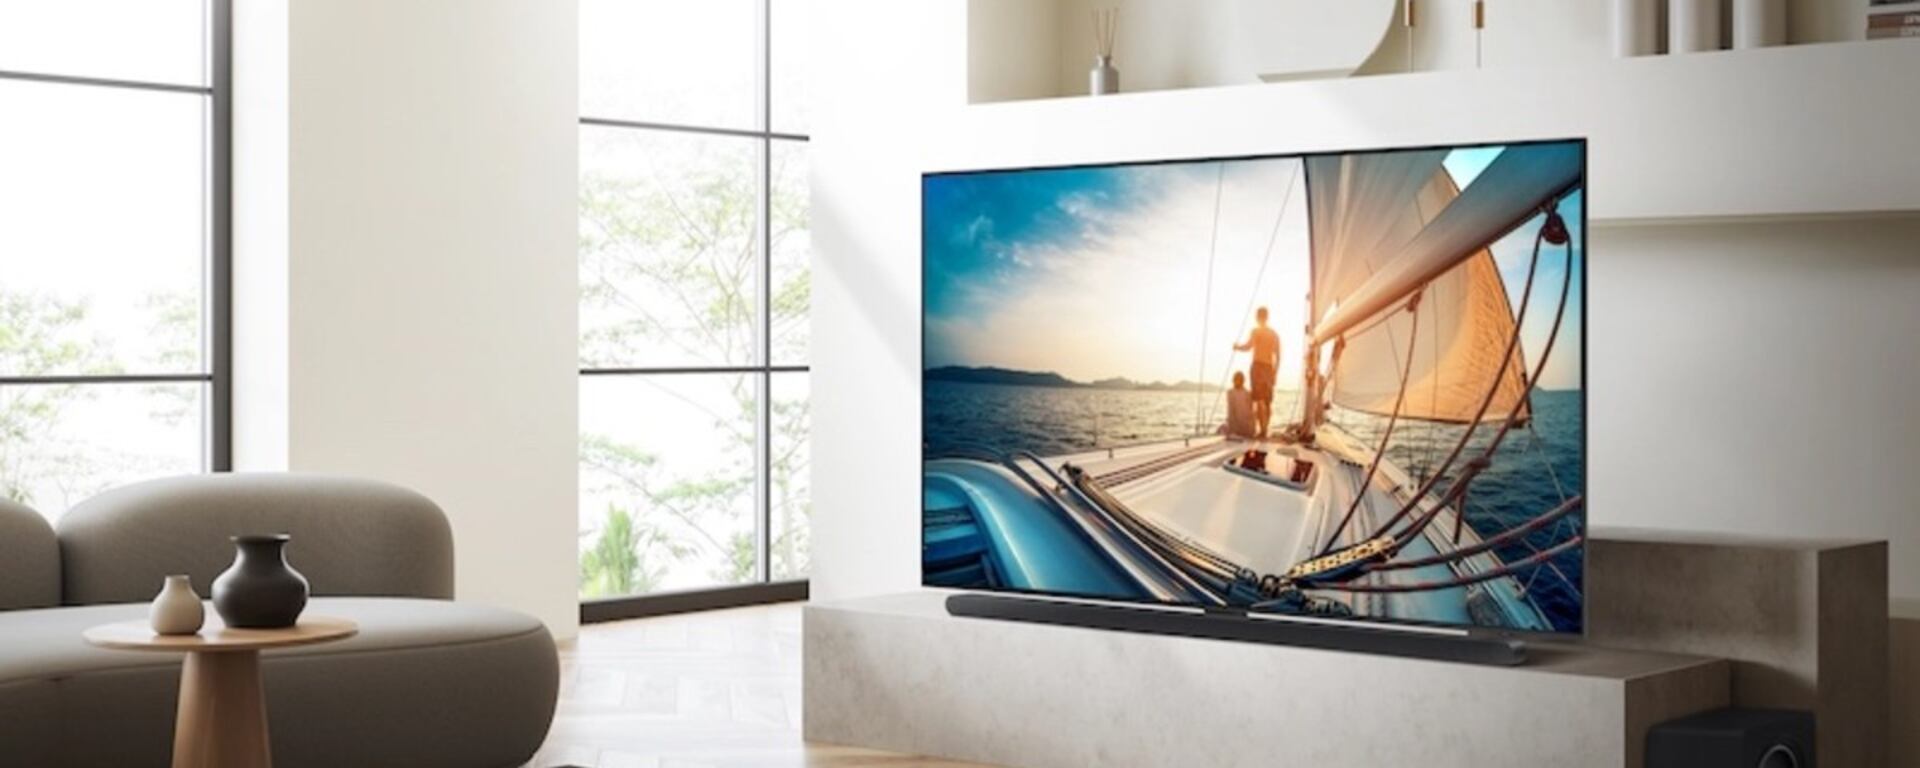 Probamos el Neo QLED QN90C, una TV que quiere llevar el entretenimiento a otro nivel | REVIEW